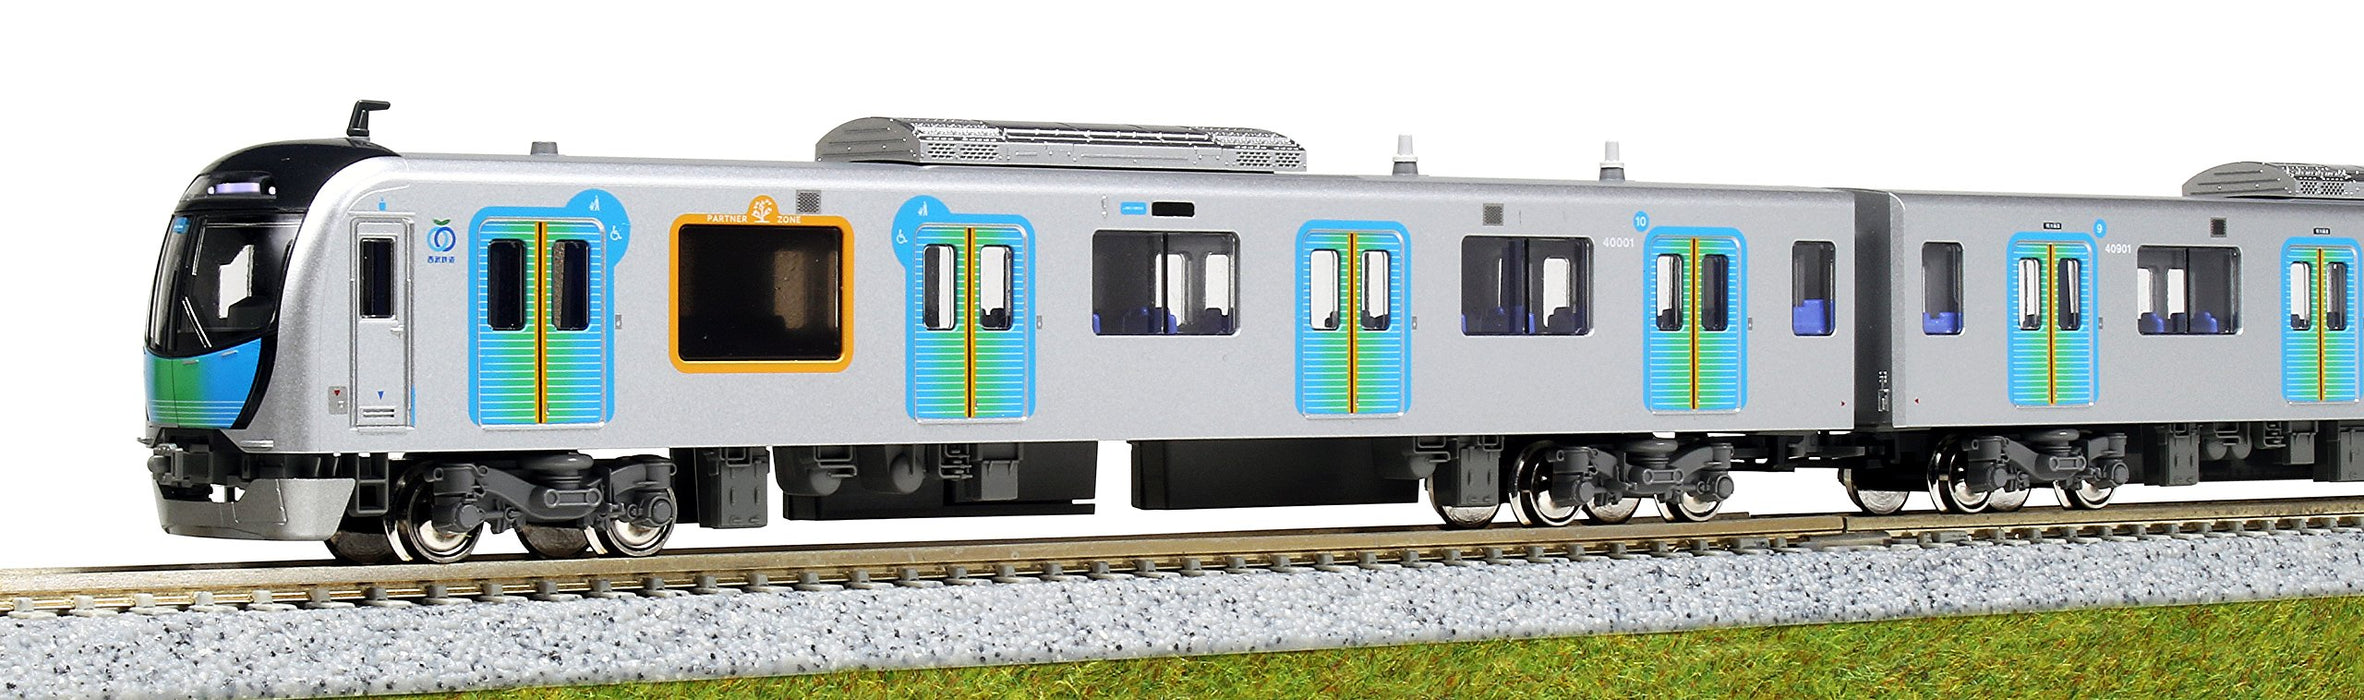 Ensemble de 4 voitures Kato N Gauge - Train modèle Seibu Railway série 40000 10-1400